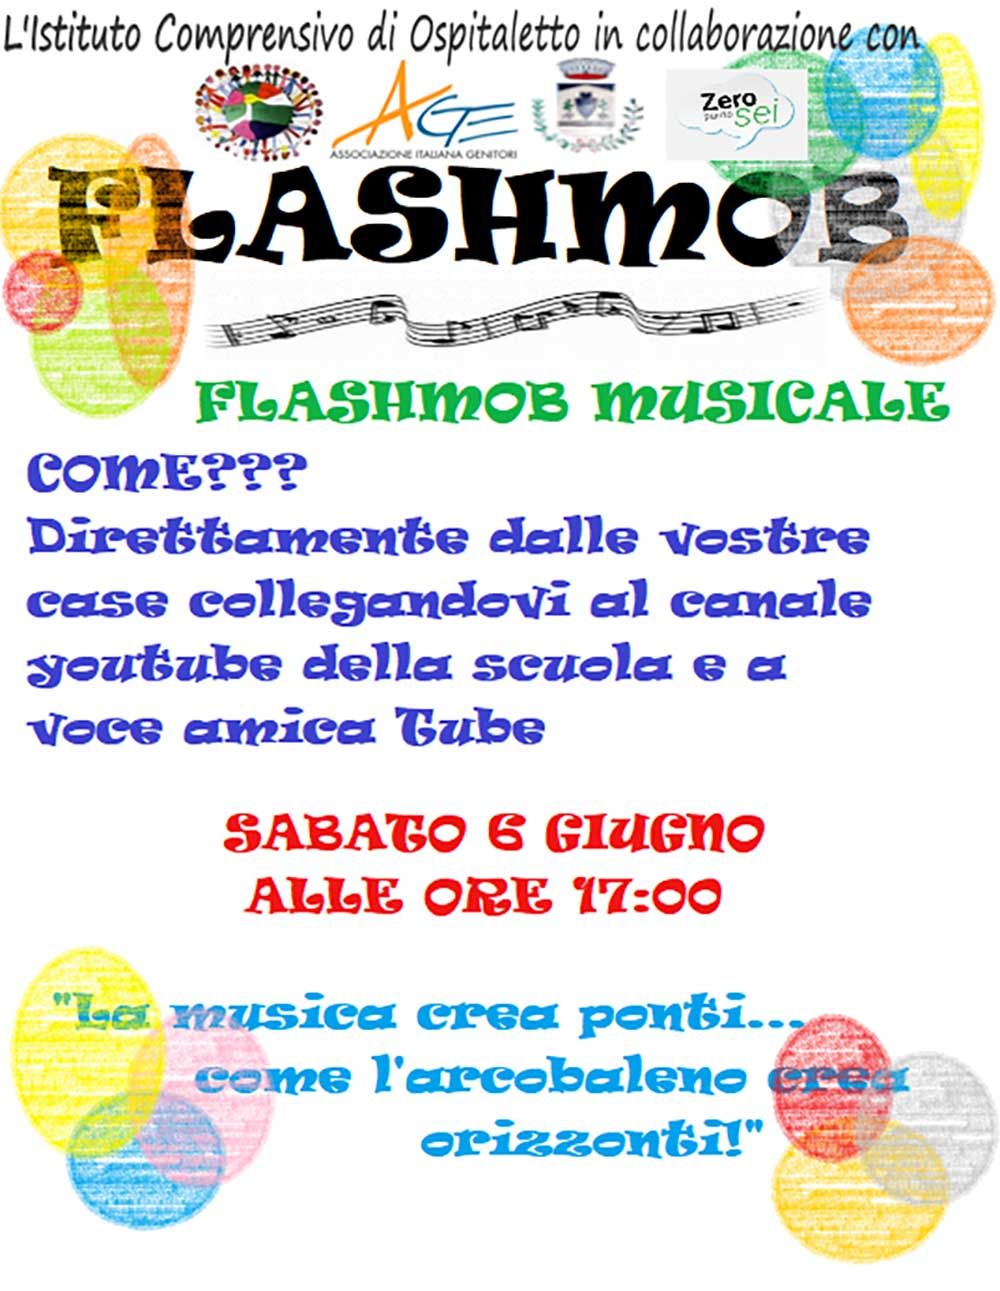 flashmob-musicale-ospitaletto